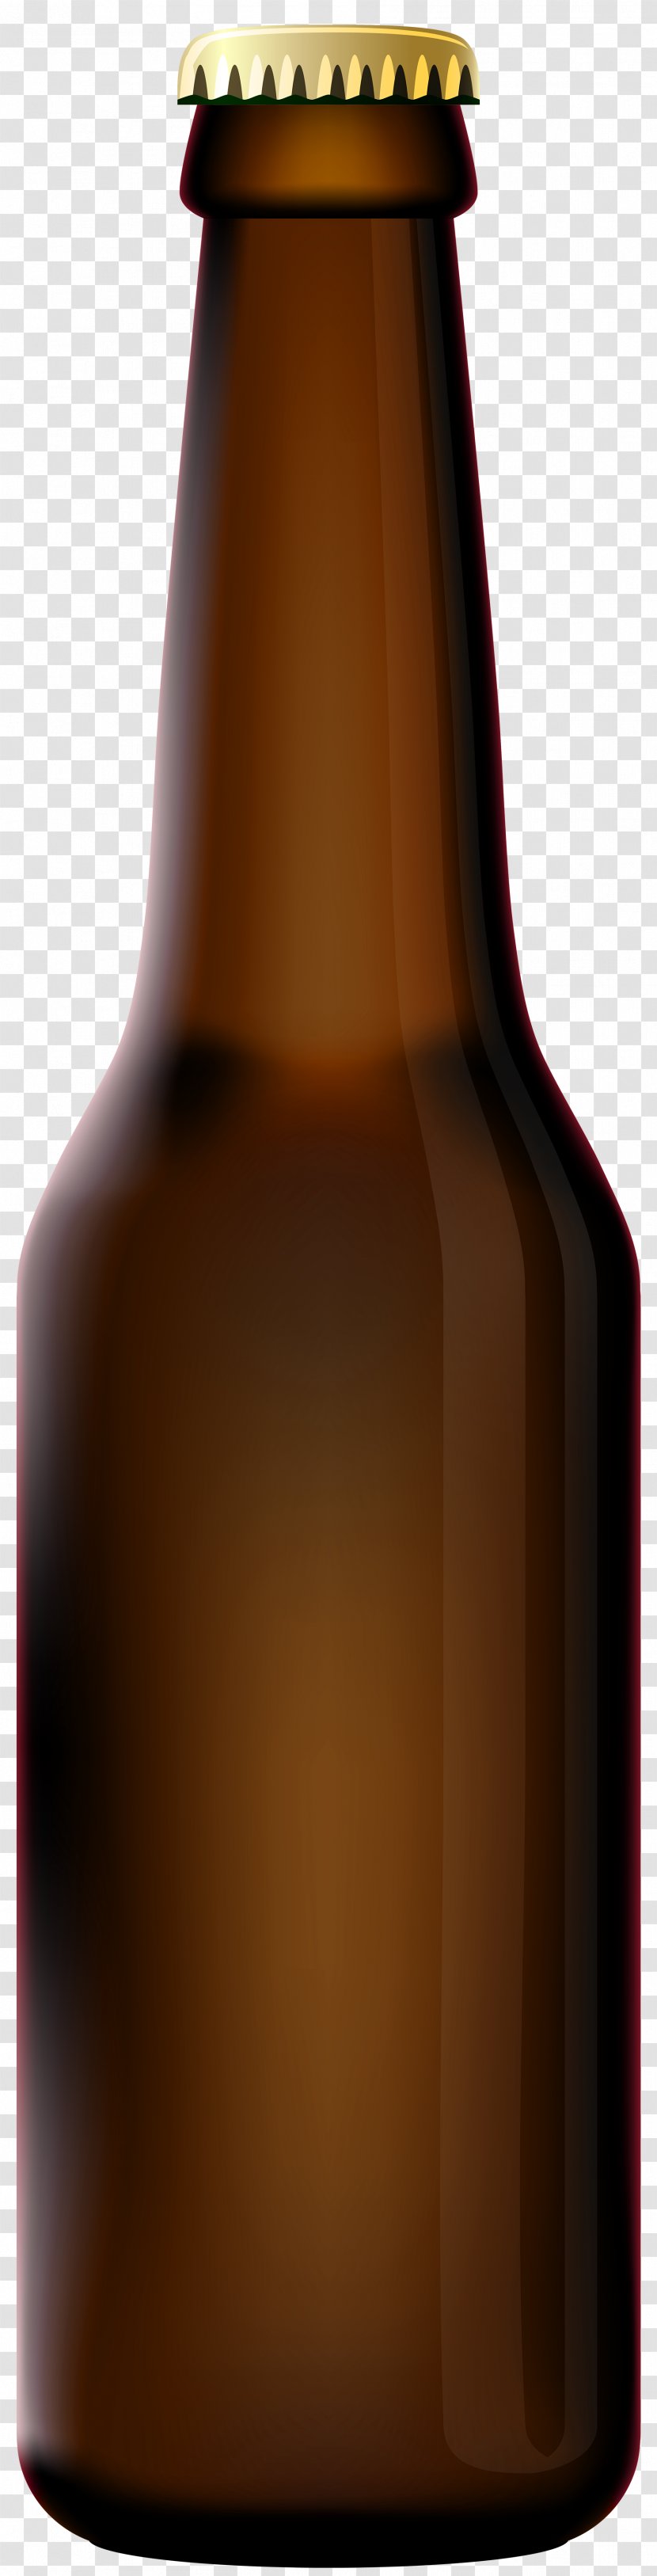 Beer Bottle Glass - Tsingtao Brewery - Clip Art Transparent PNG